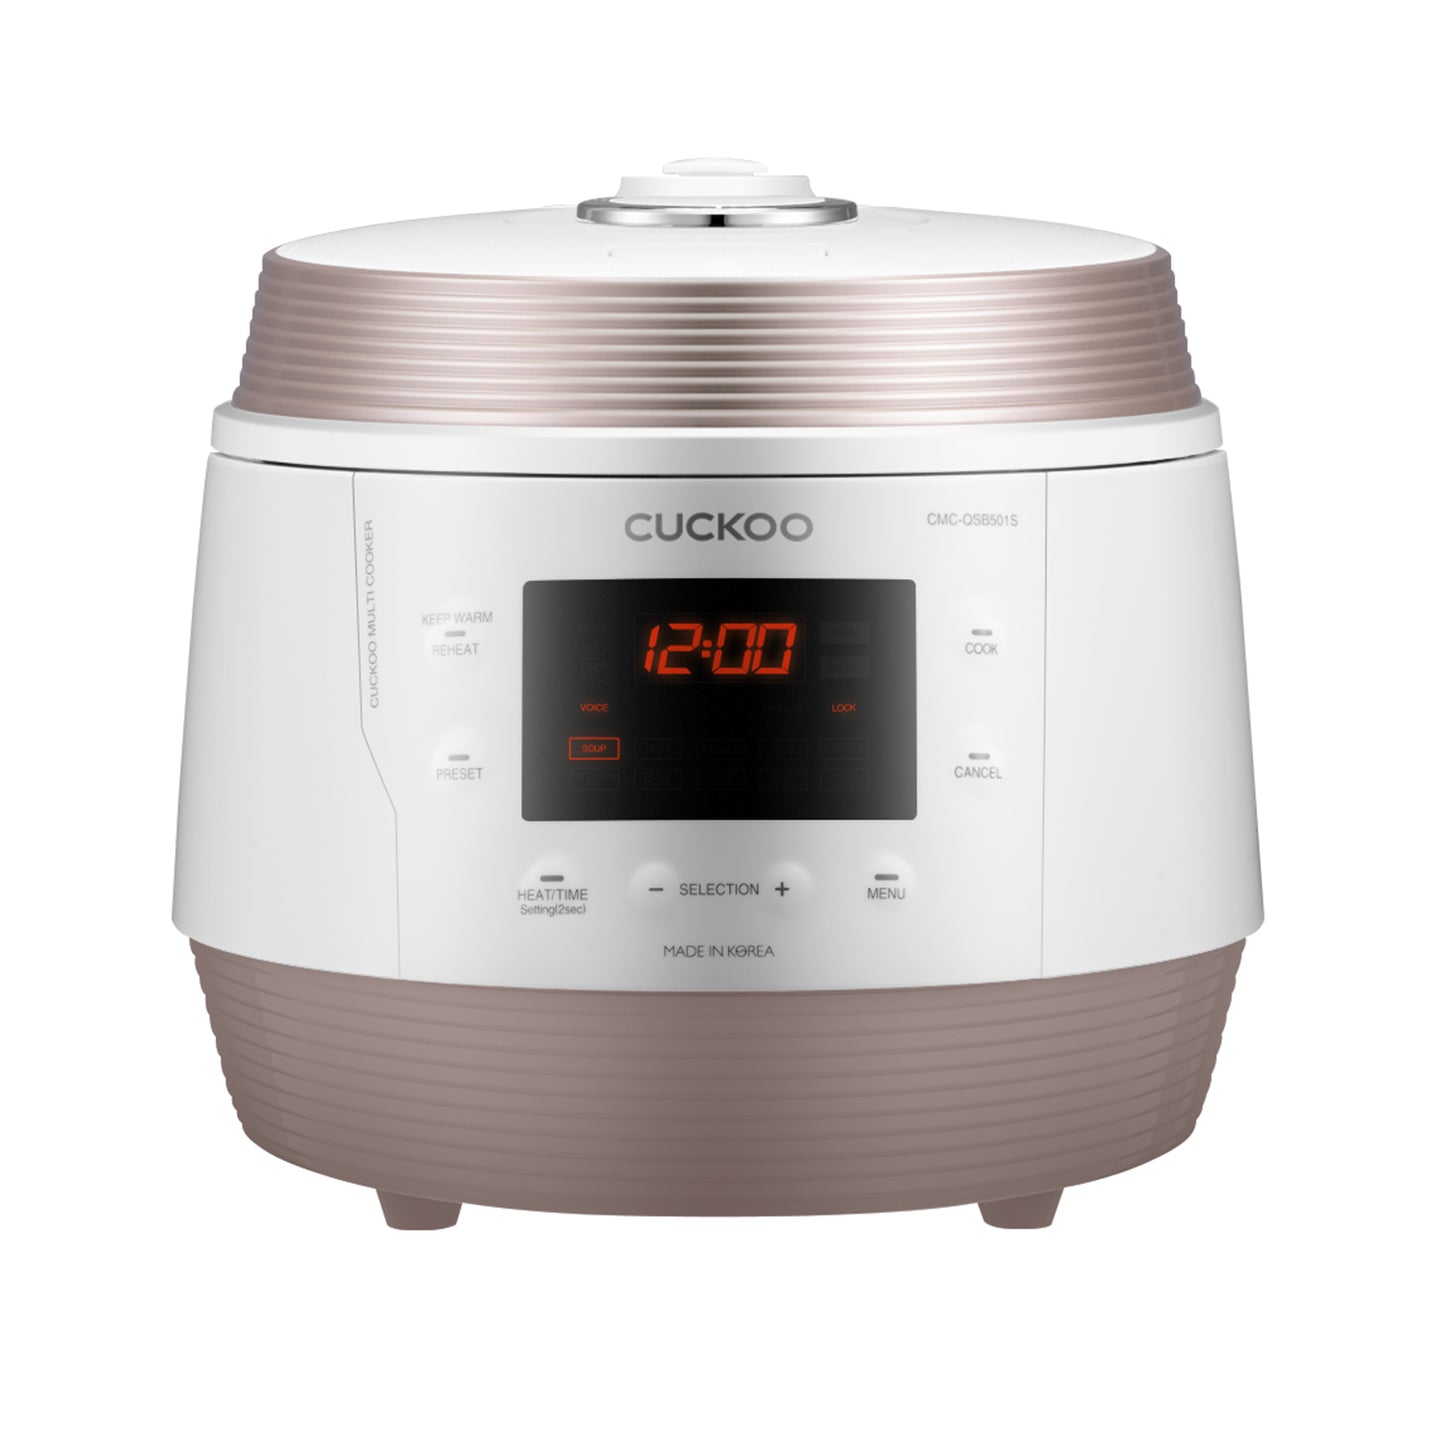 Cuckoo Premium Multi-Pressure Cooker (CMC-QSB501S)